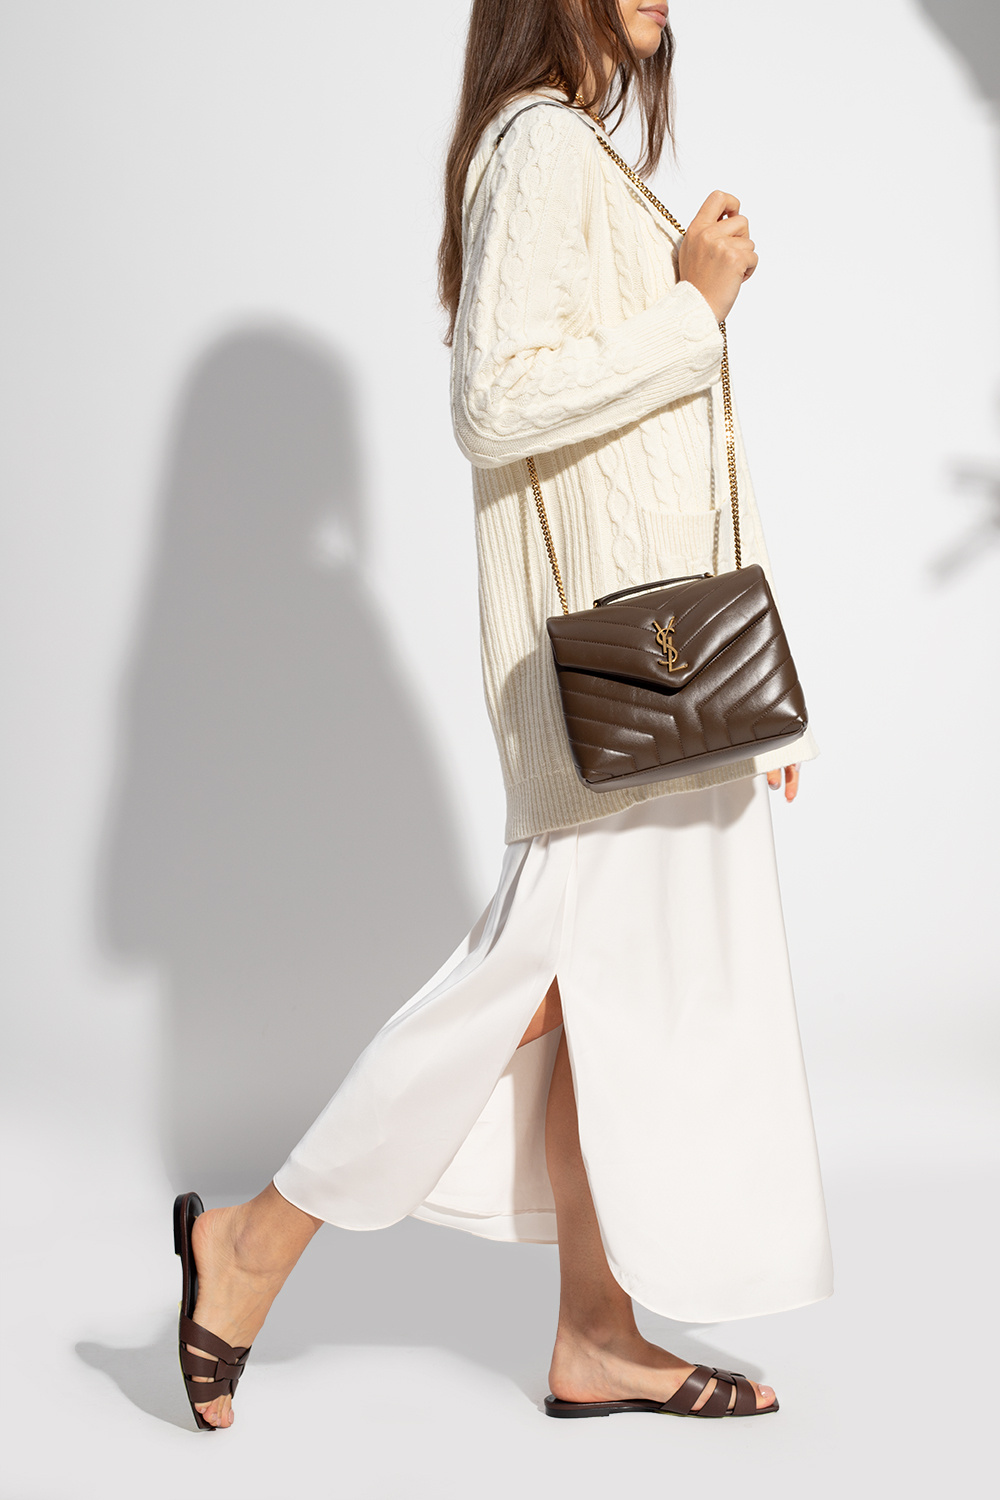 Yves Saint Laurent YSL - Loulou Small bag on Designer Wardrobe